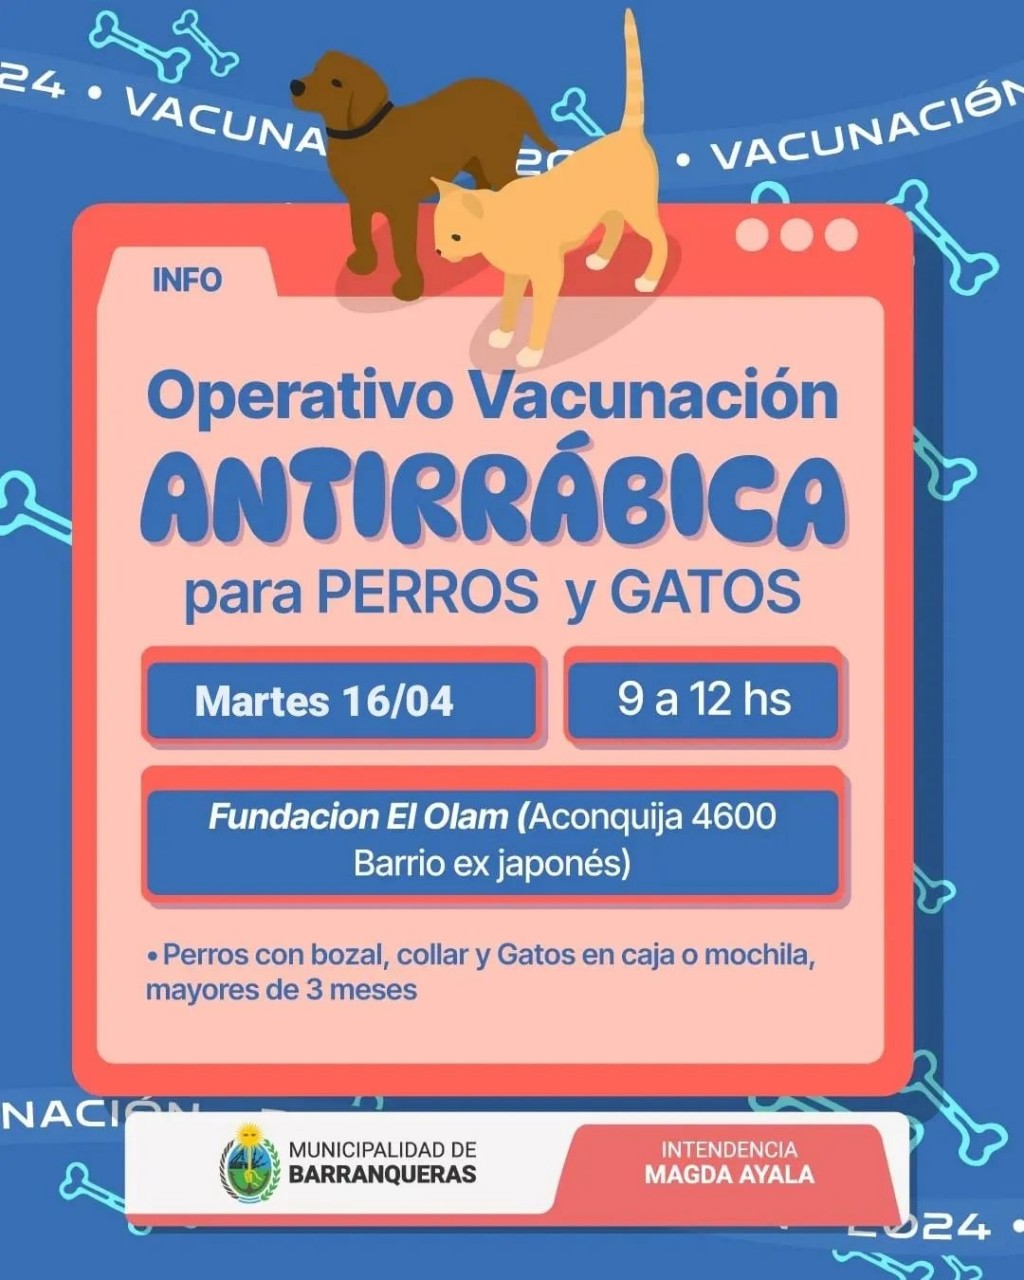 Barranqueras informa sobre el operativo de vacunación antirrábica para este martes